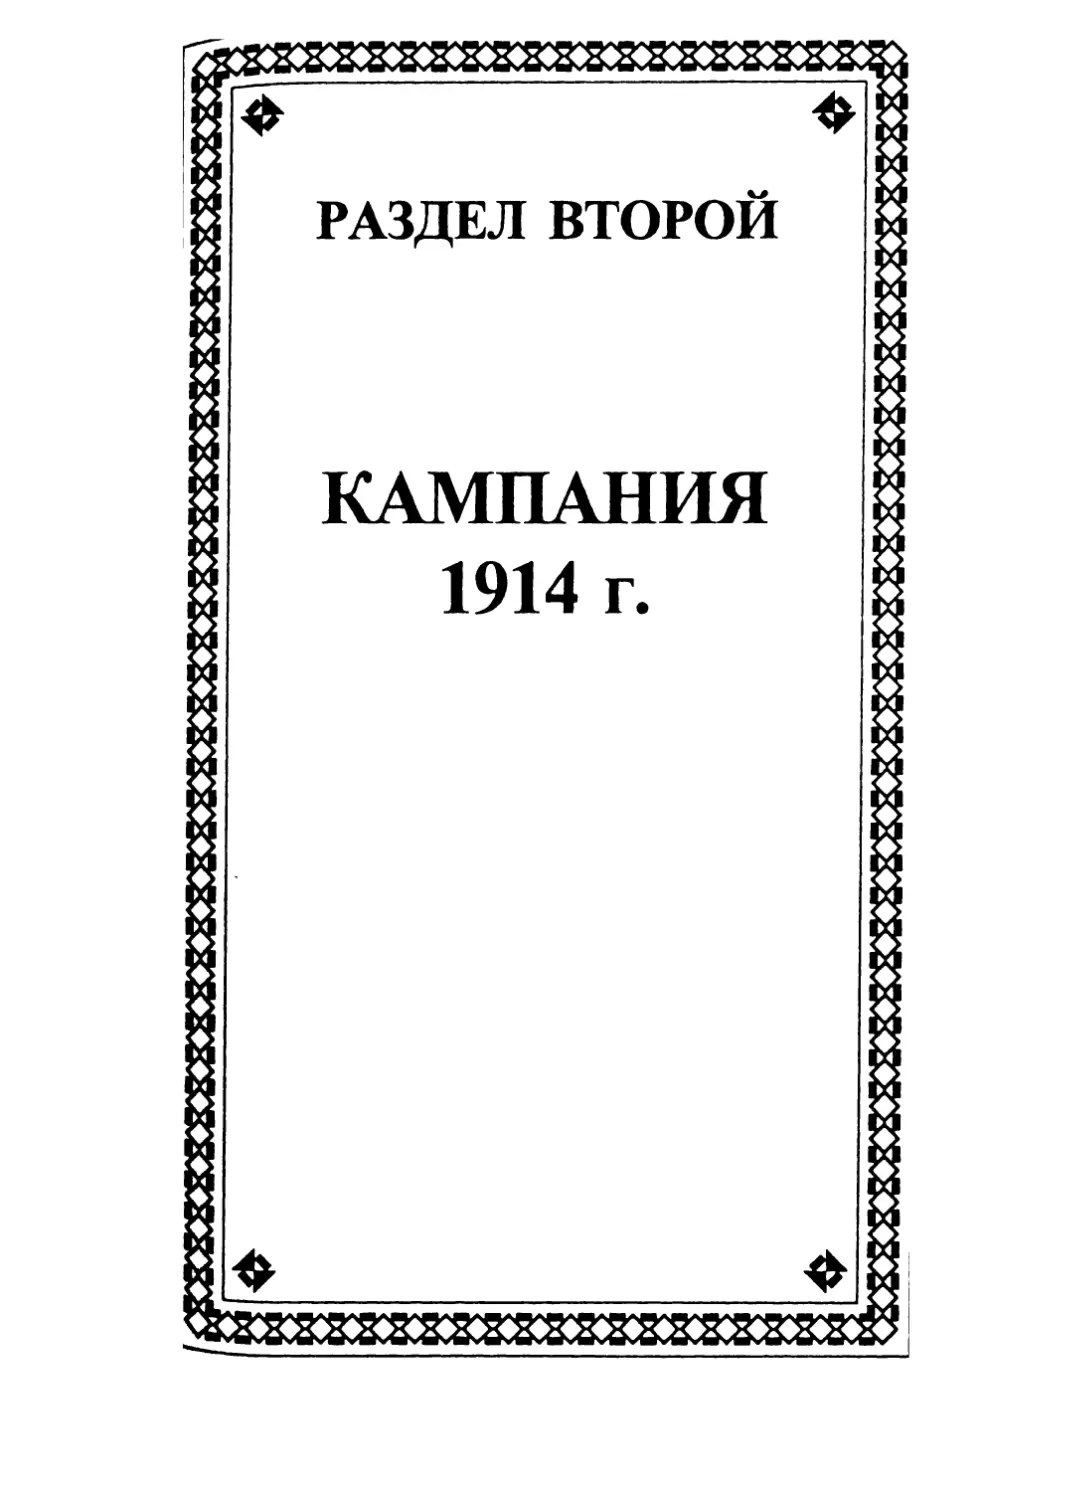 РАЗДЕЛ ВТОРОЙ. КАМПАНИЯ 1914 г